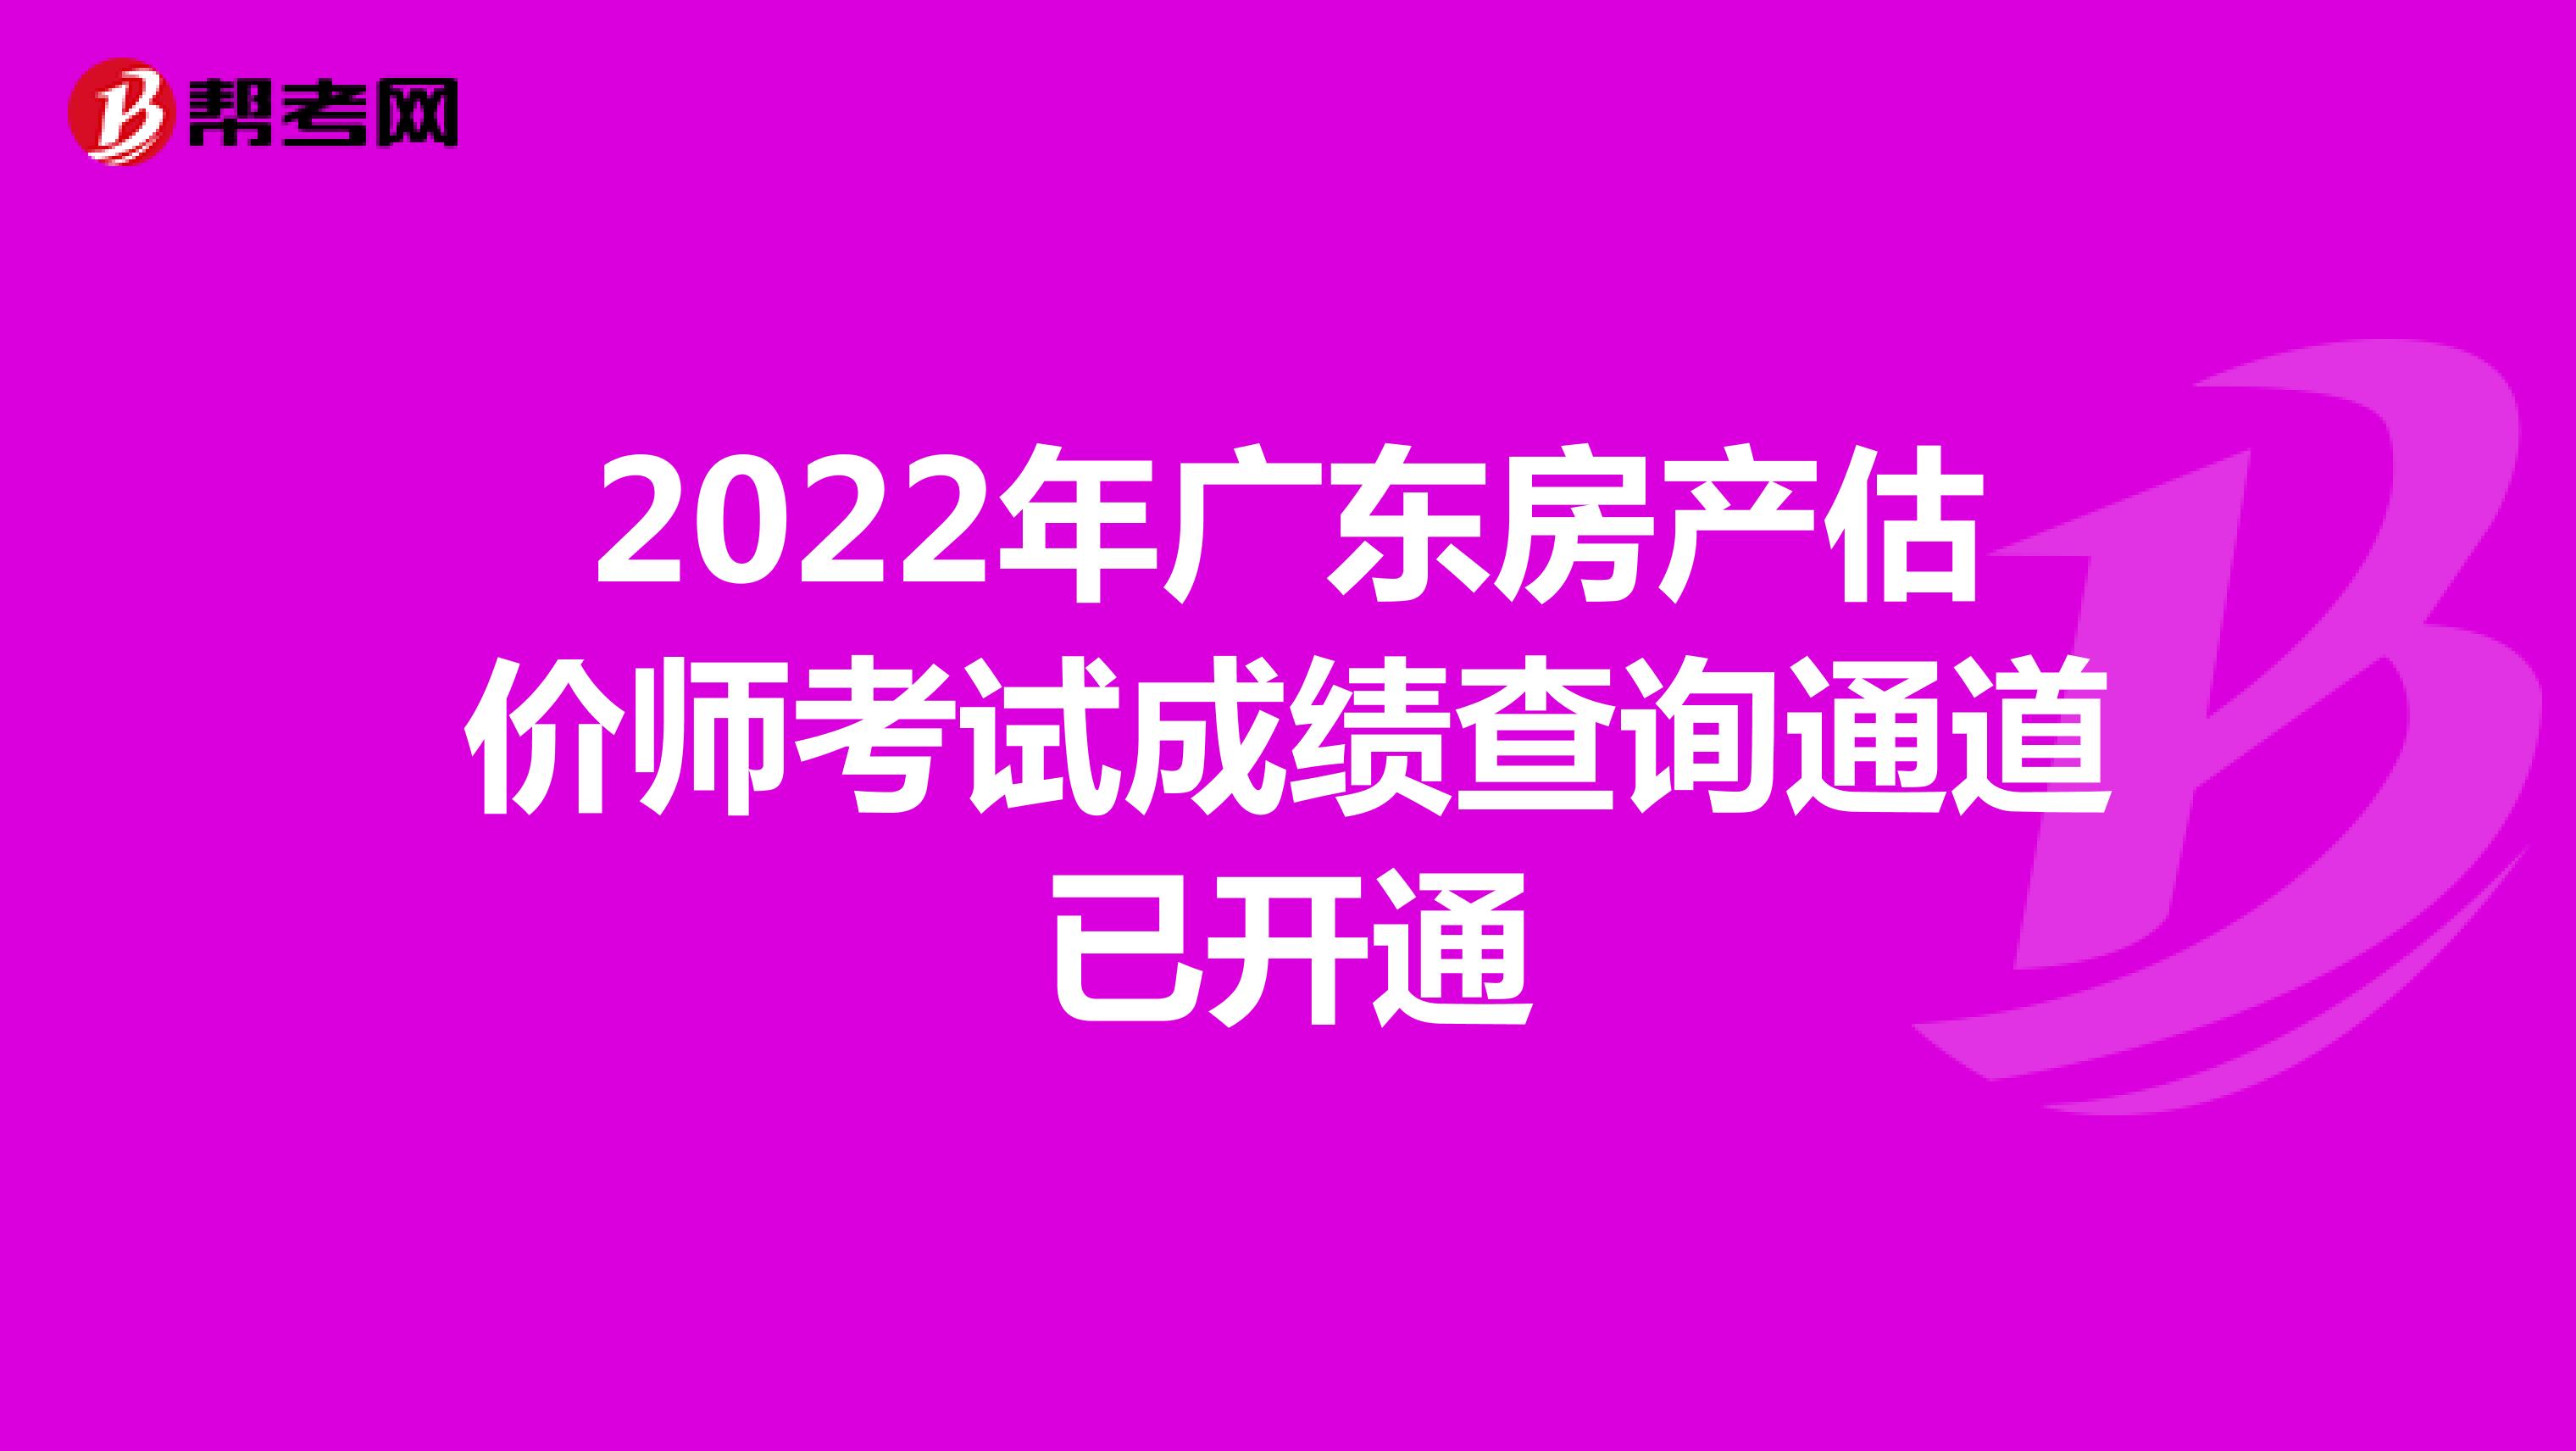 2022年广东房产估价师考试成绩查询通道已开通